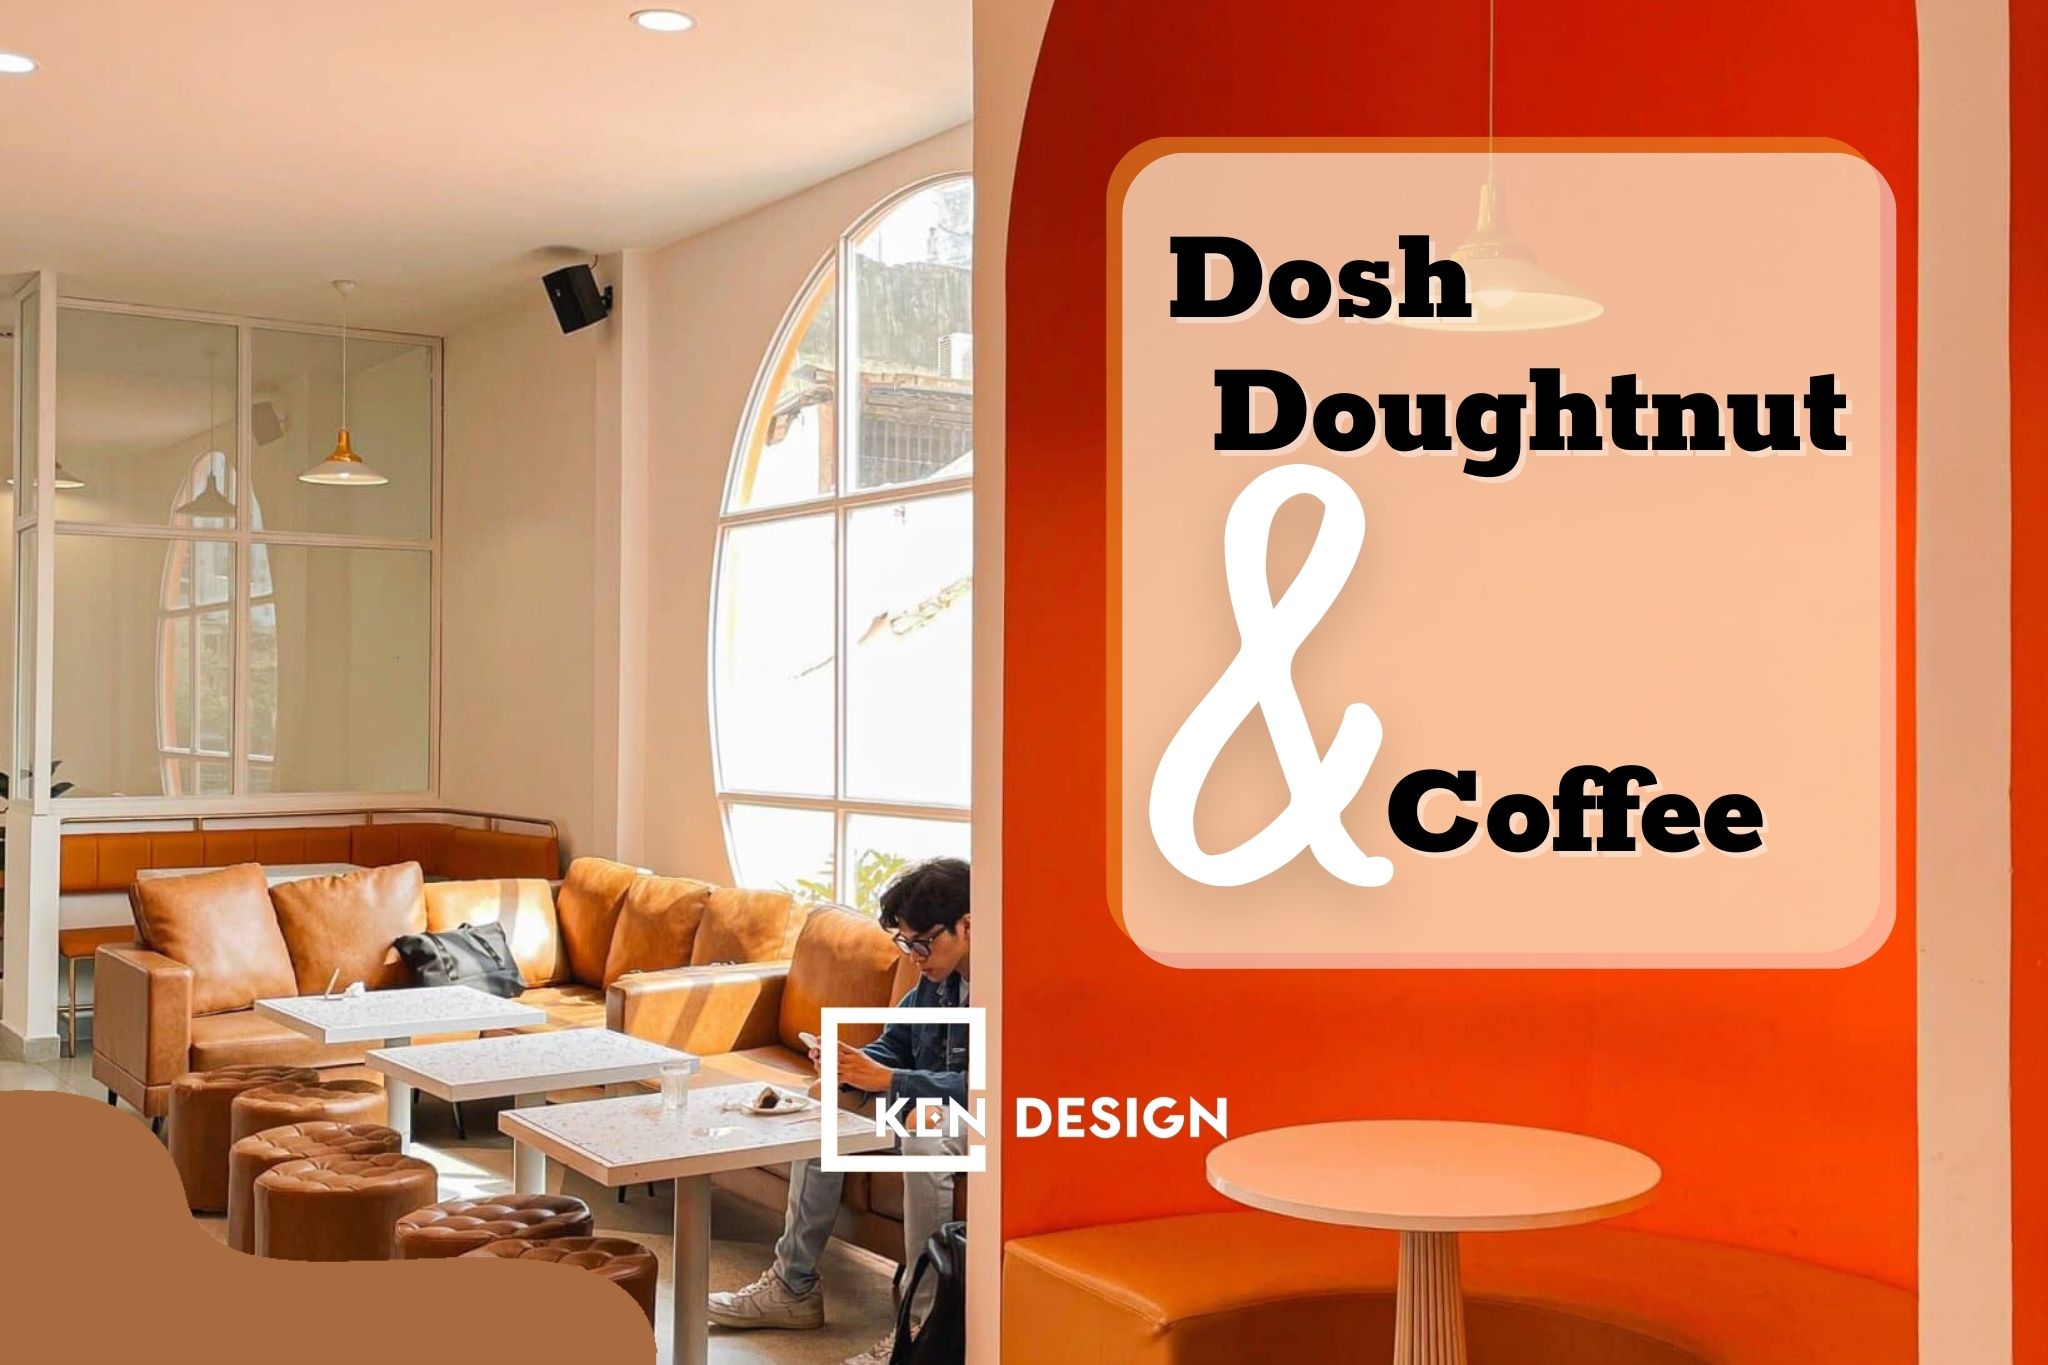 Thiết kế Dosh Doughtnut & Coffee thời thượng và trendy